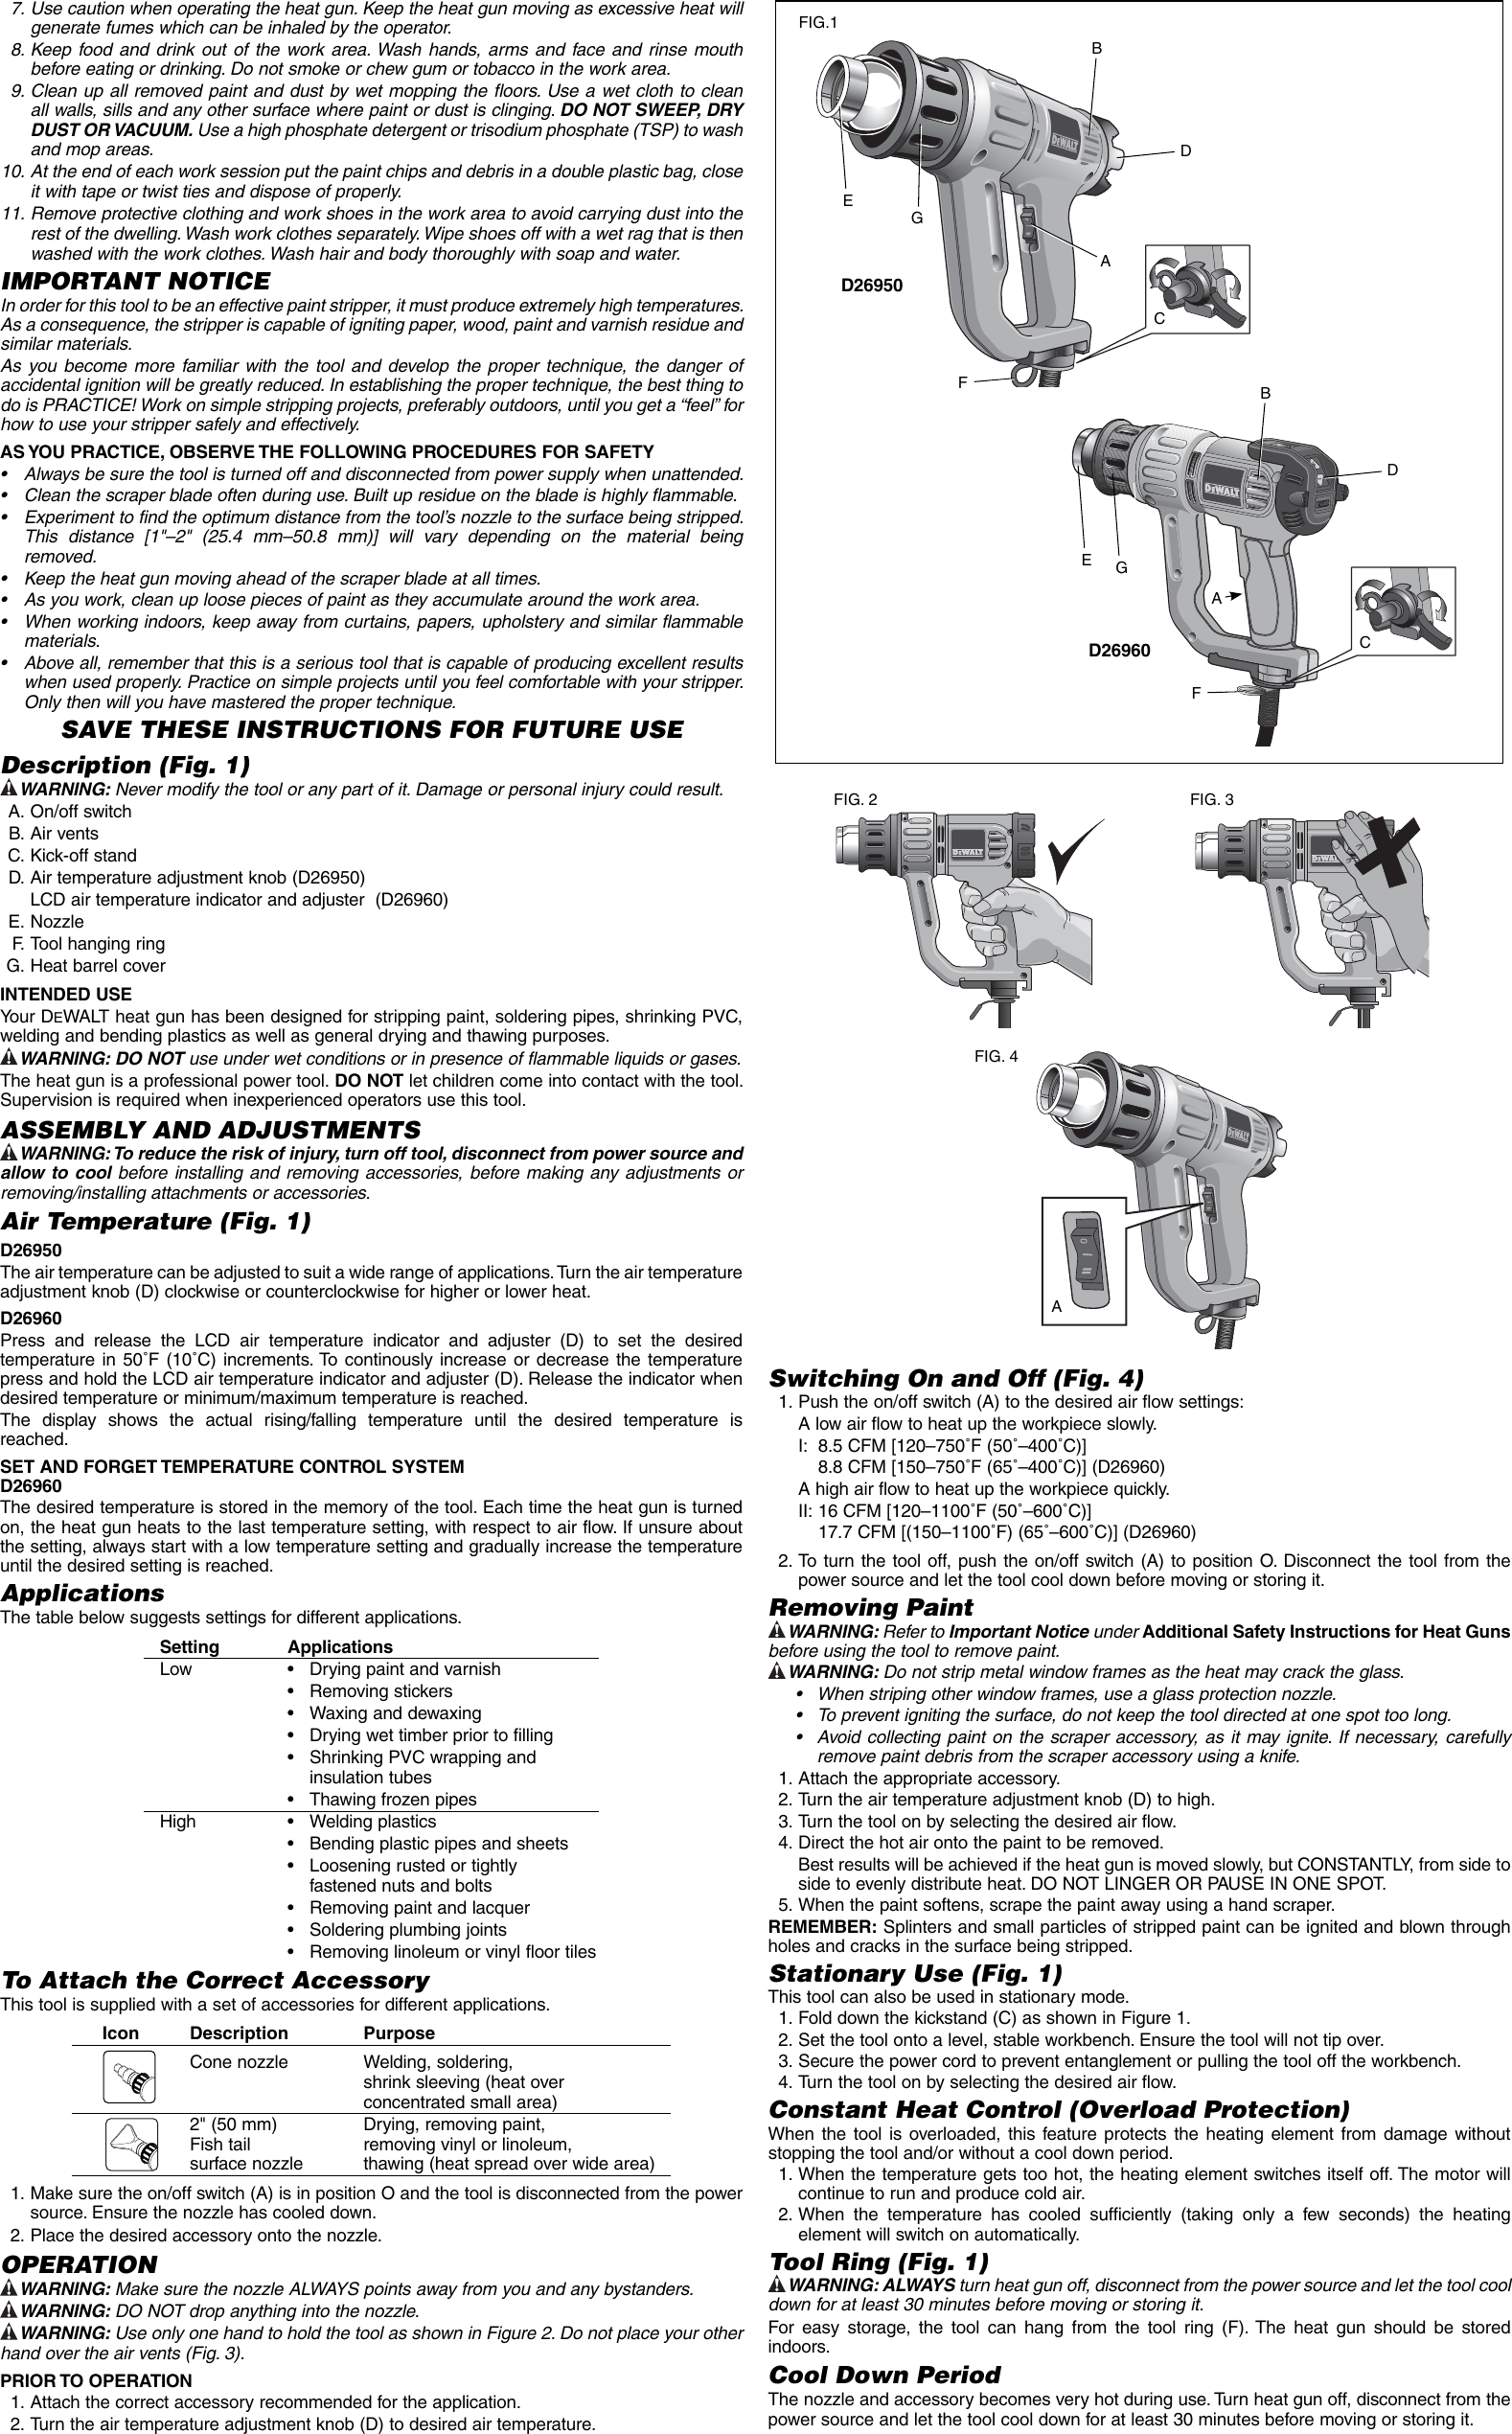 Page 2 of 7 - DeWalt D26960K D26950 Heat Gun NA User Manual  To The 1f6861de-222d-4353-86d6-e7cfa9e8f729